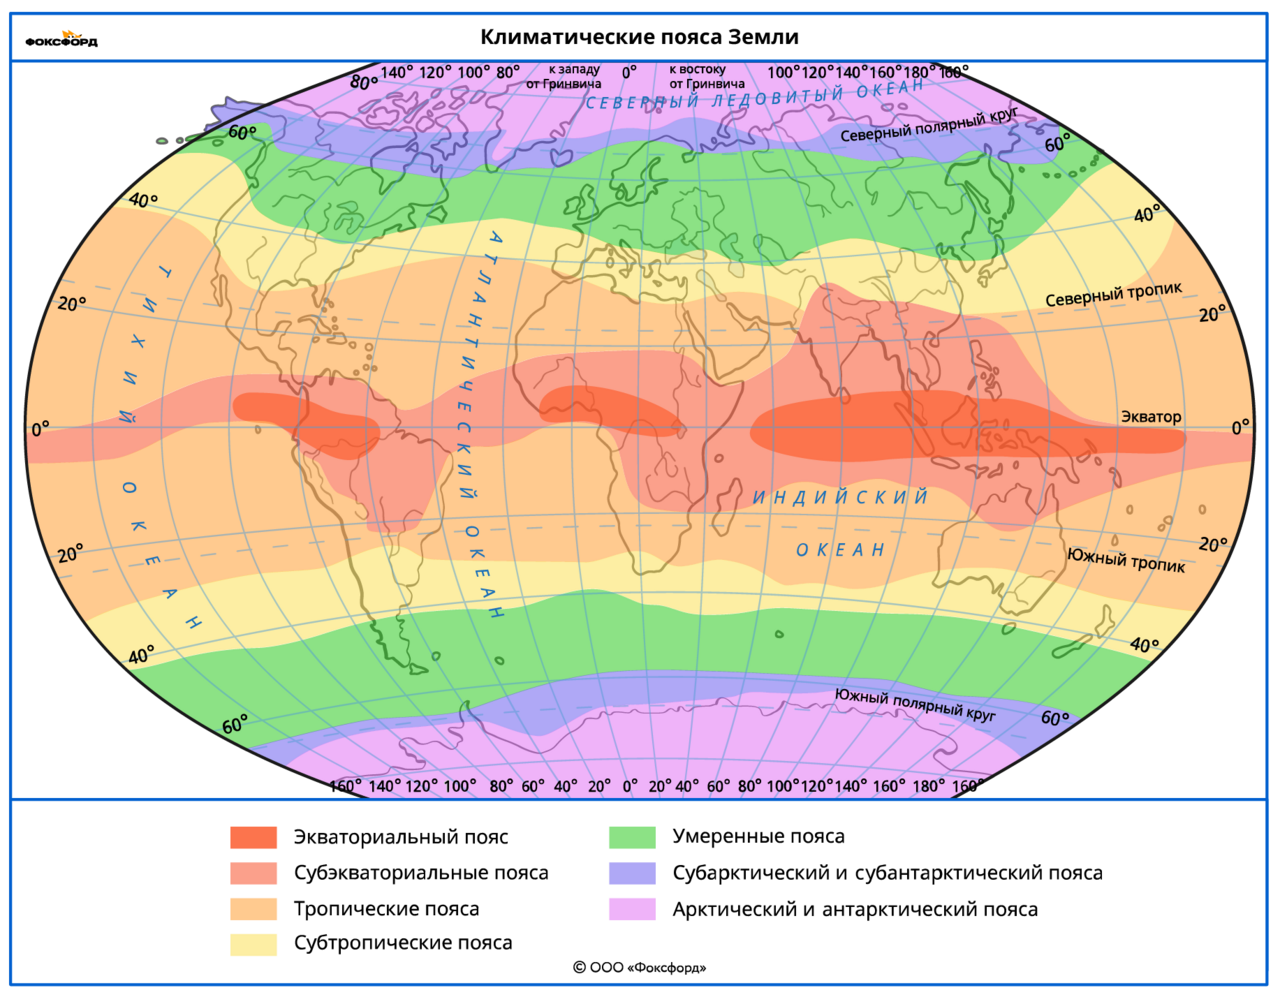 Какая зона располагается в самой северной части. Климатические пояса земли карта.